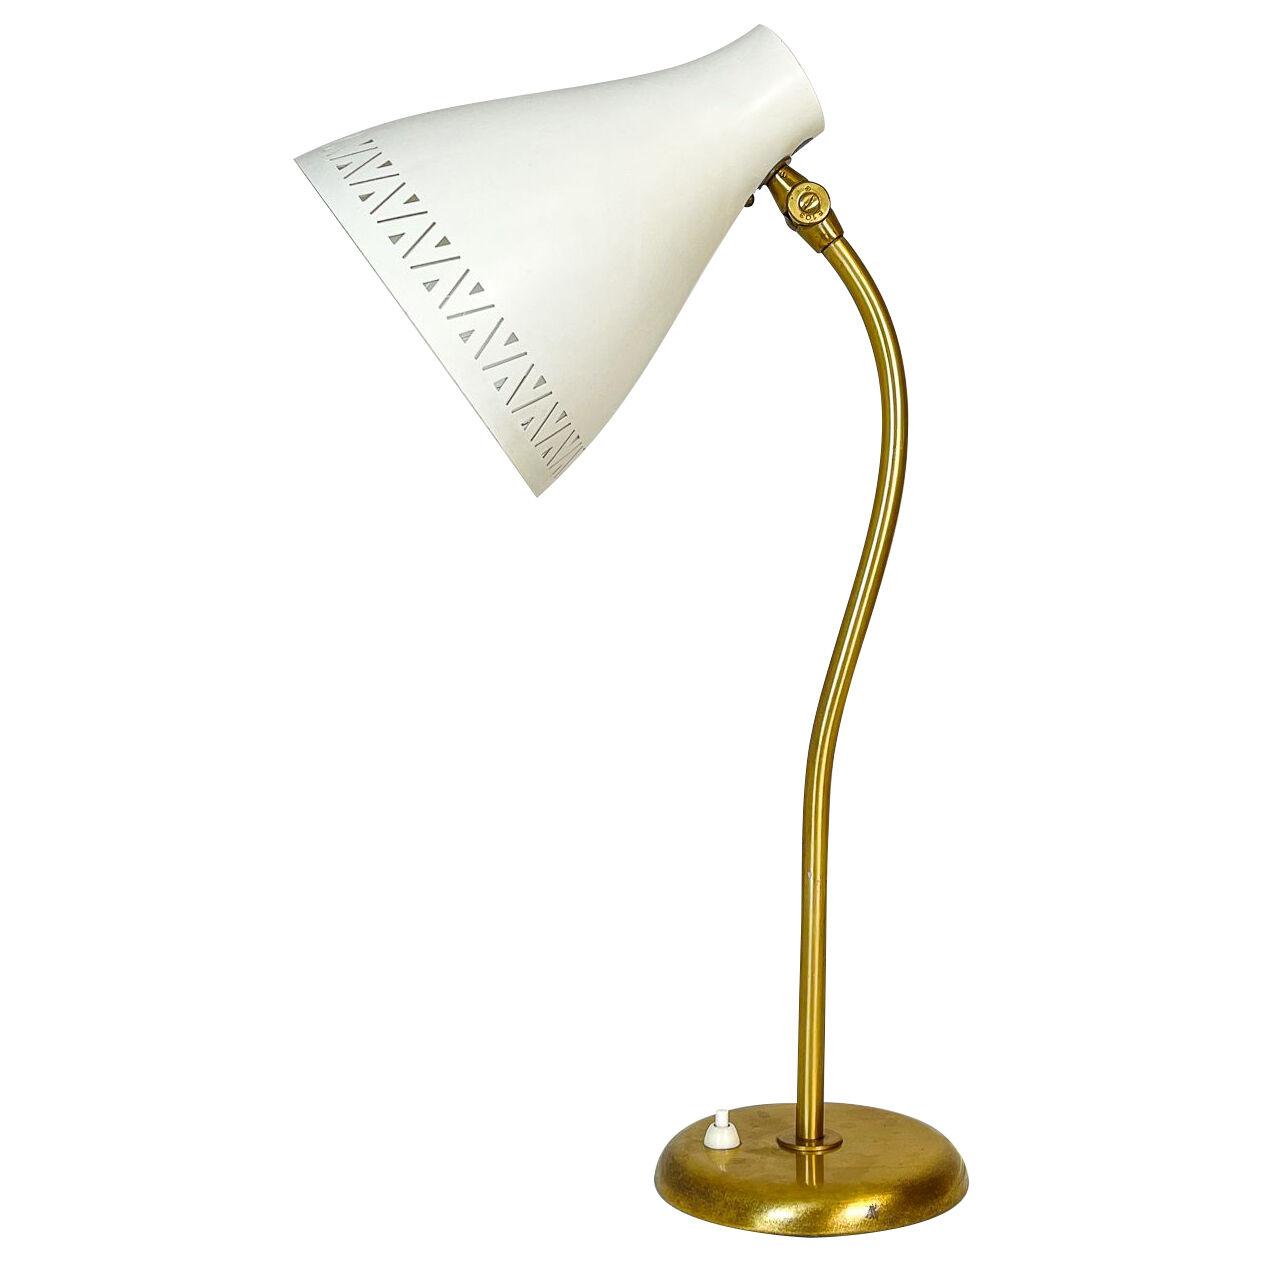 Swedish Midcentury Table Lamp Rare Large Adjustable Böhlmarks 1940s